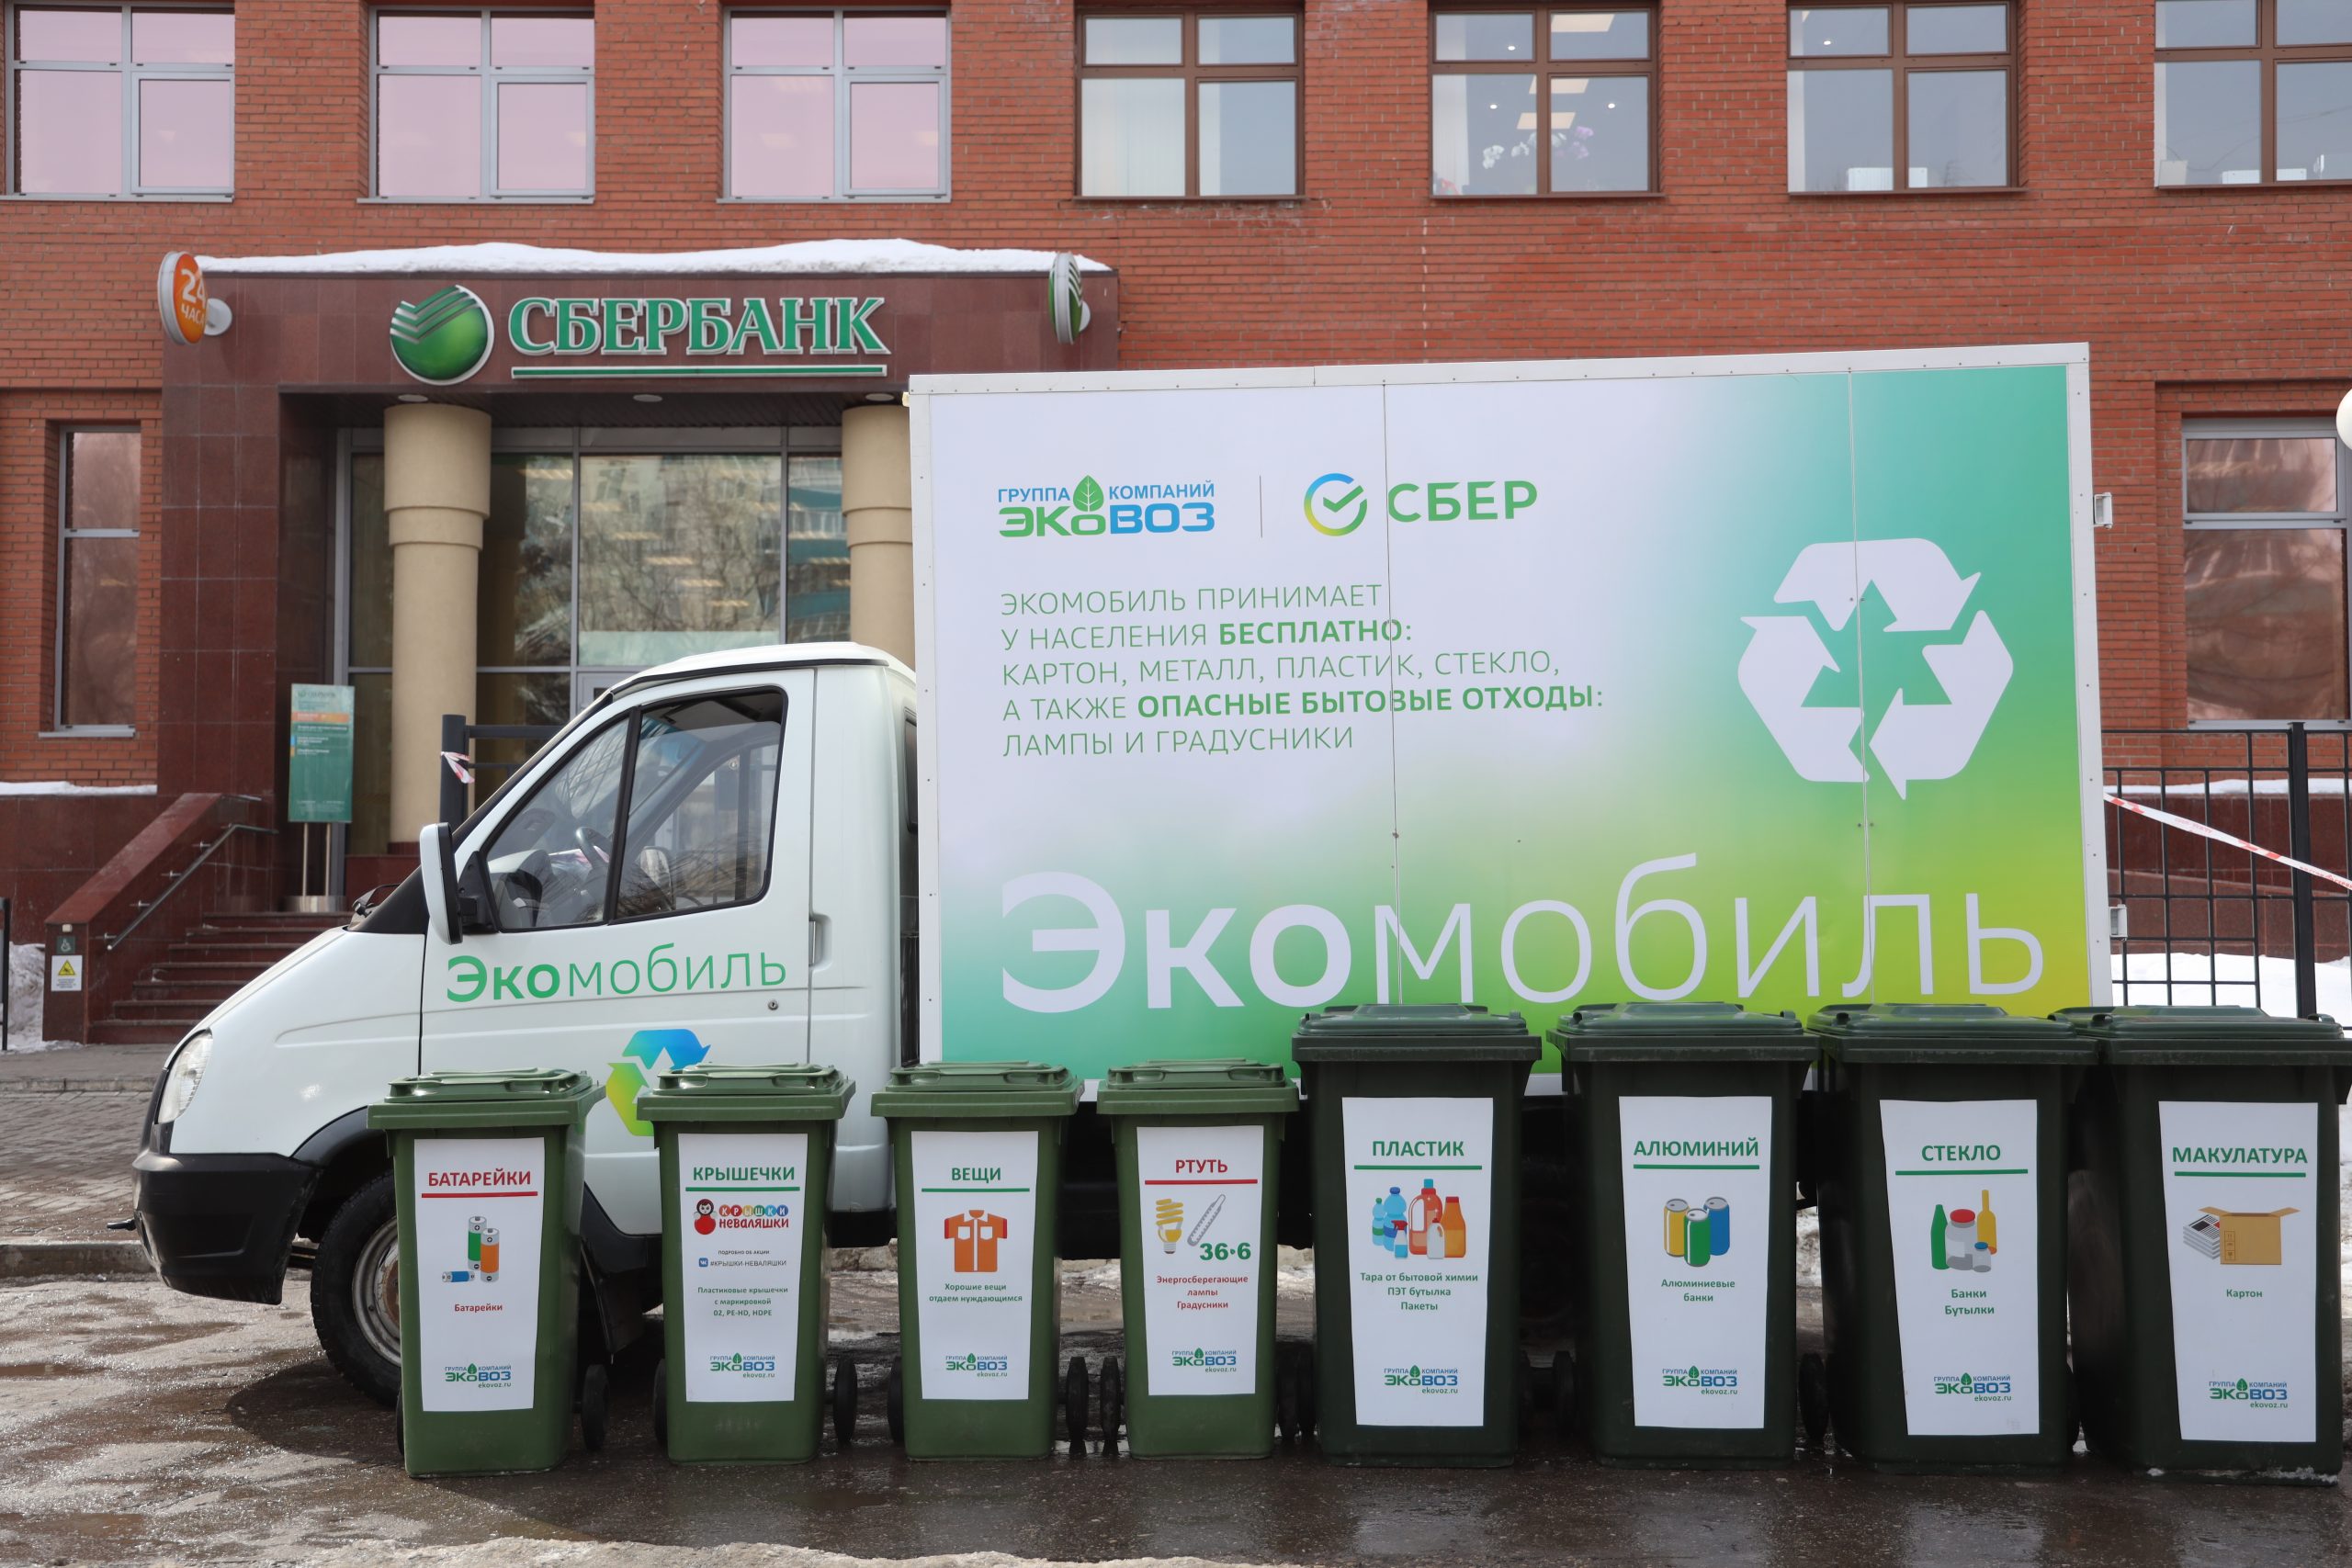 585 кг раздельно собранных отходов: Сбербанк и ЭкоВоз подвели первые итоги работы совместного проекта